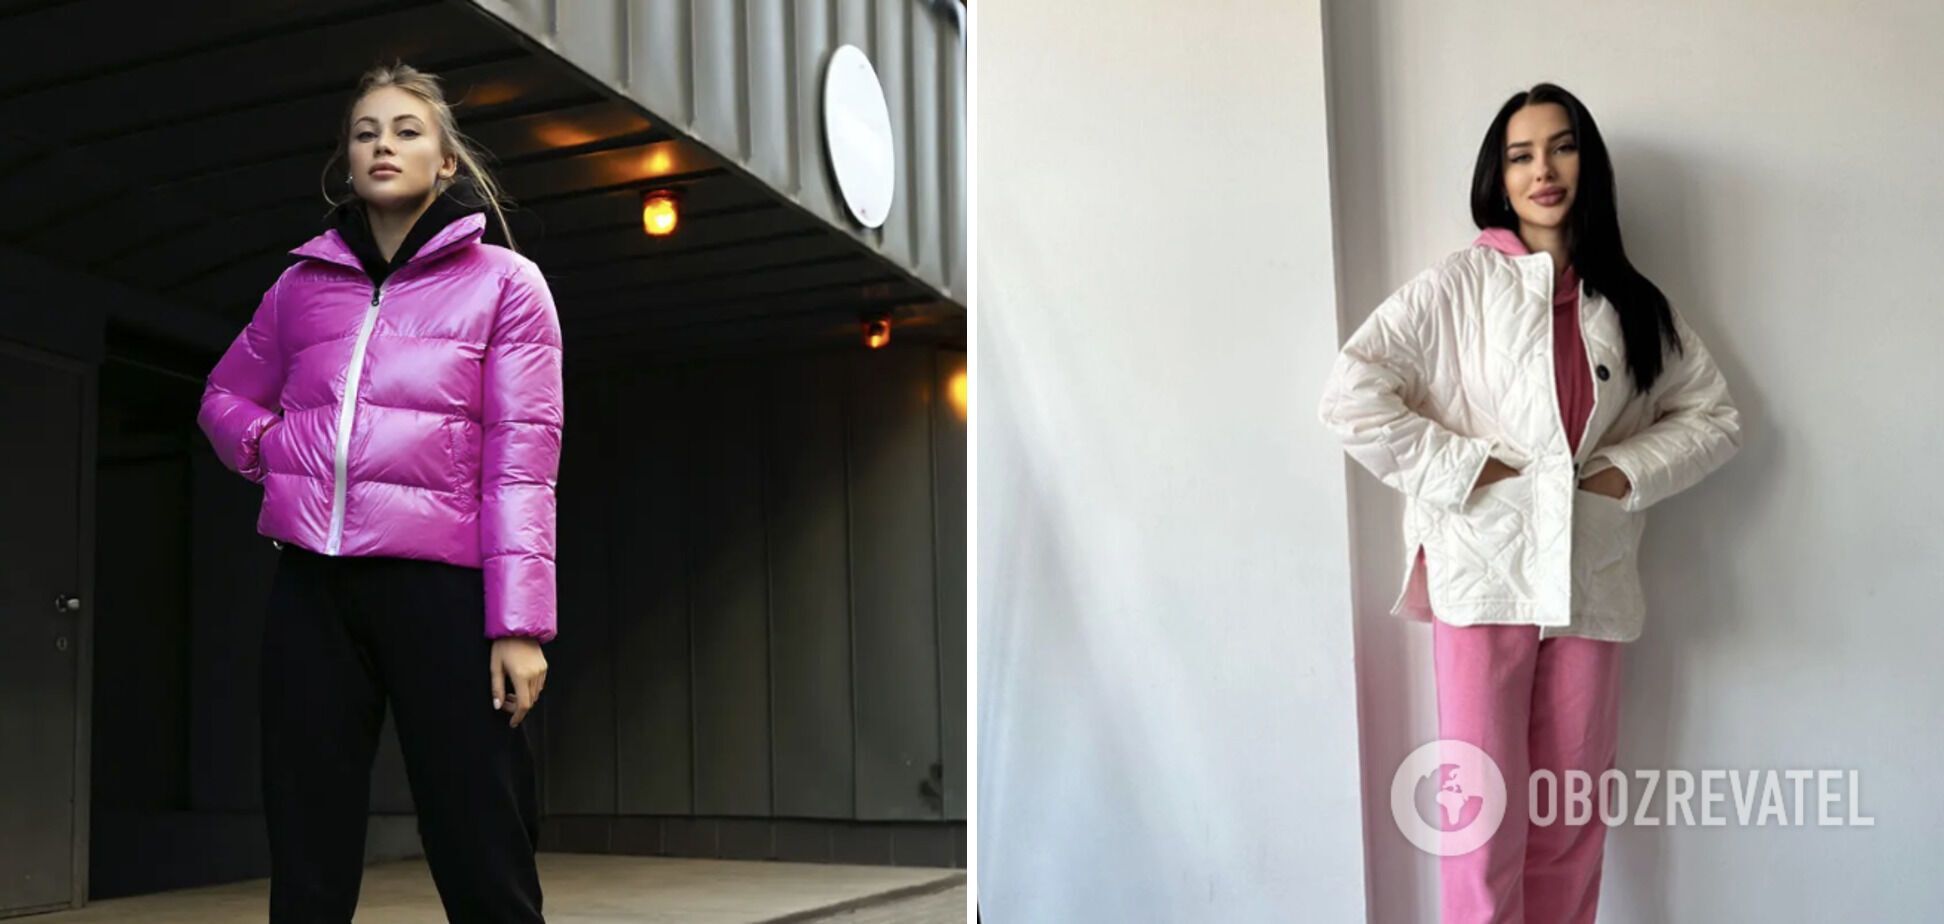 Розовую куртку следует заменить на одежду более спокойного оттенка.